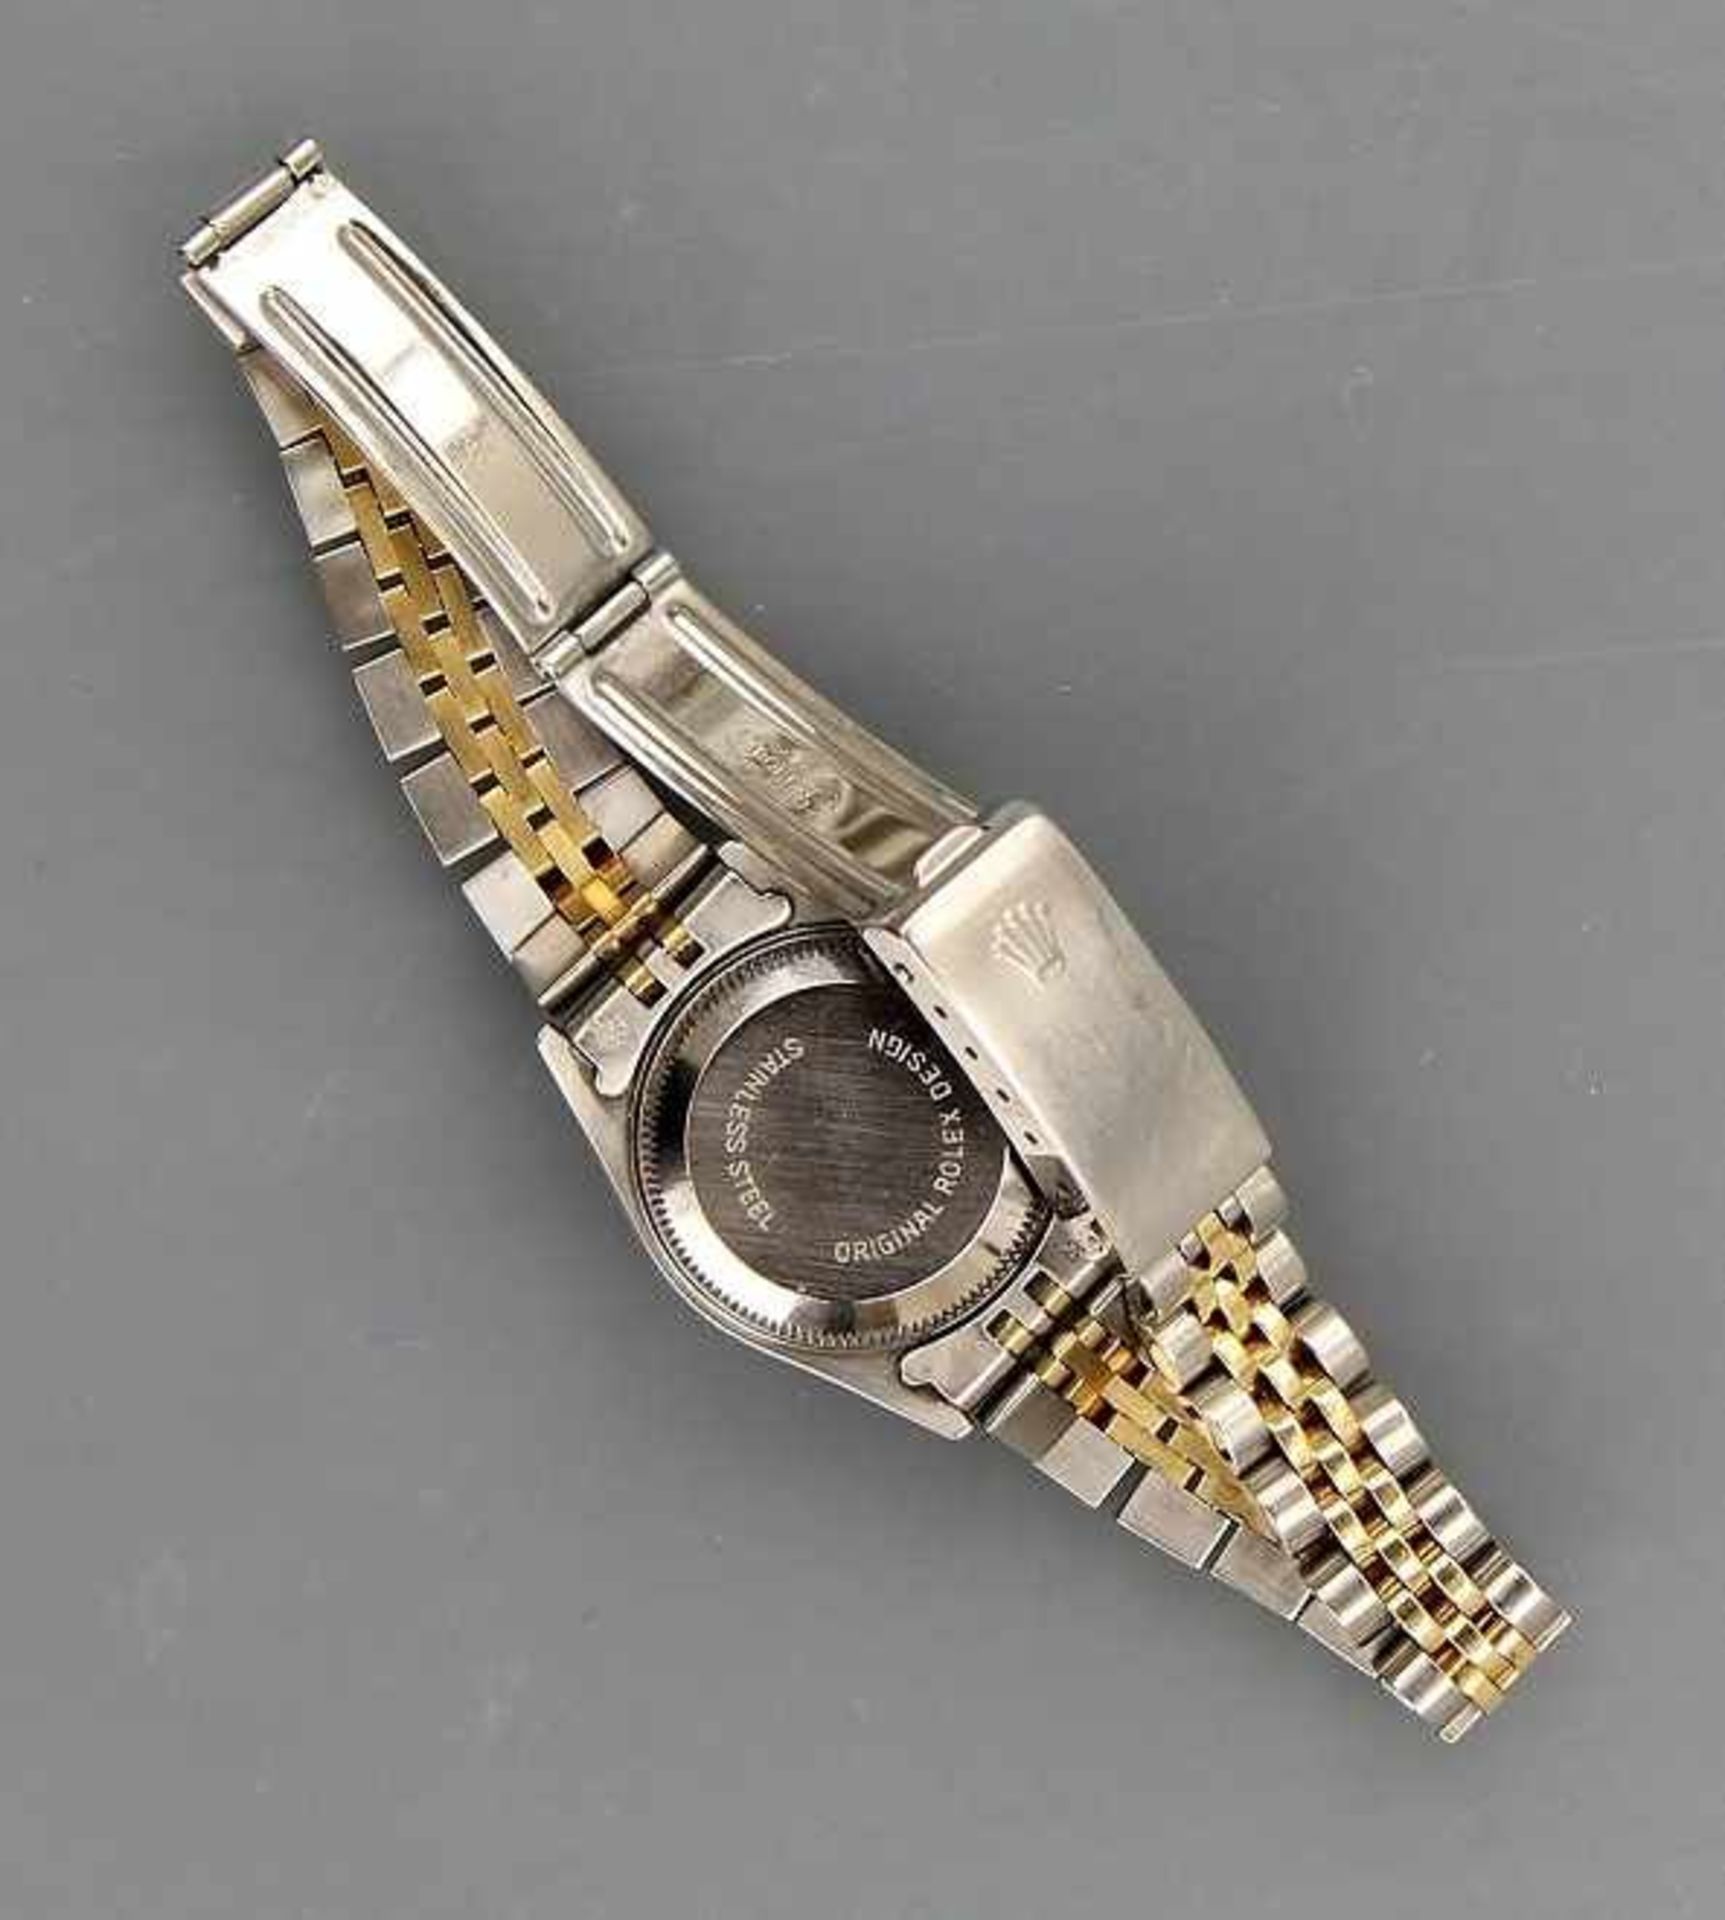 DAU "Rolex Oyster Perpetual Date Superlative Chronometer" Gehäuse und Band Stahl und Gelbgold 18kt., - Image 3 of 3